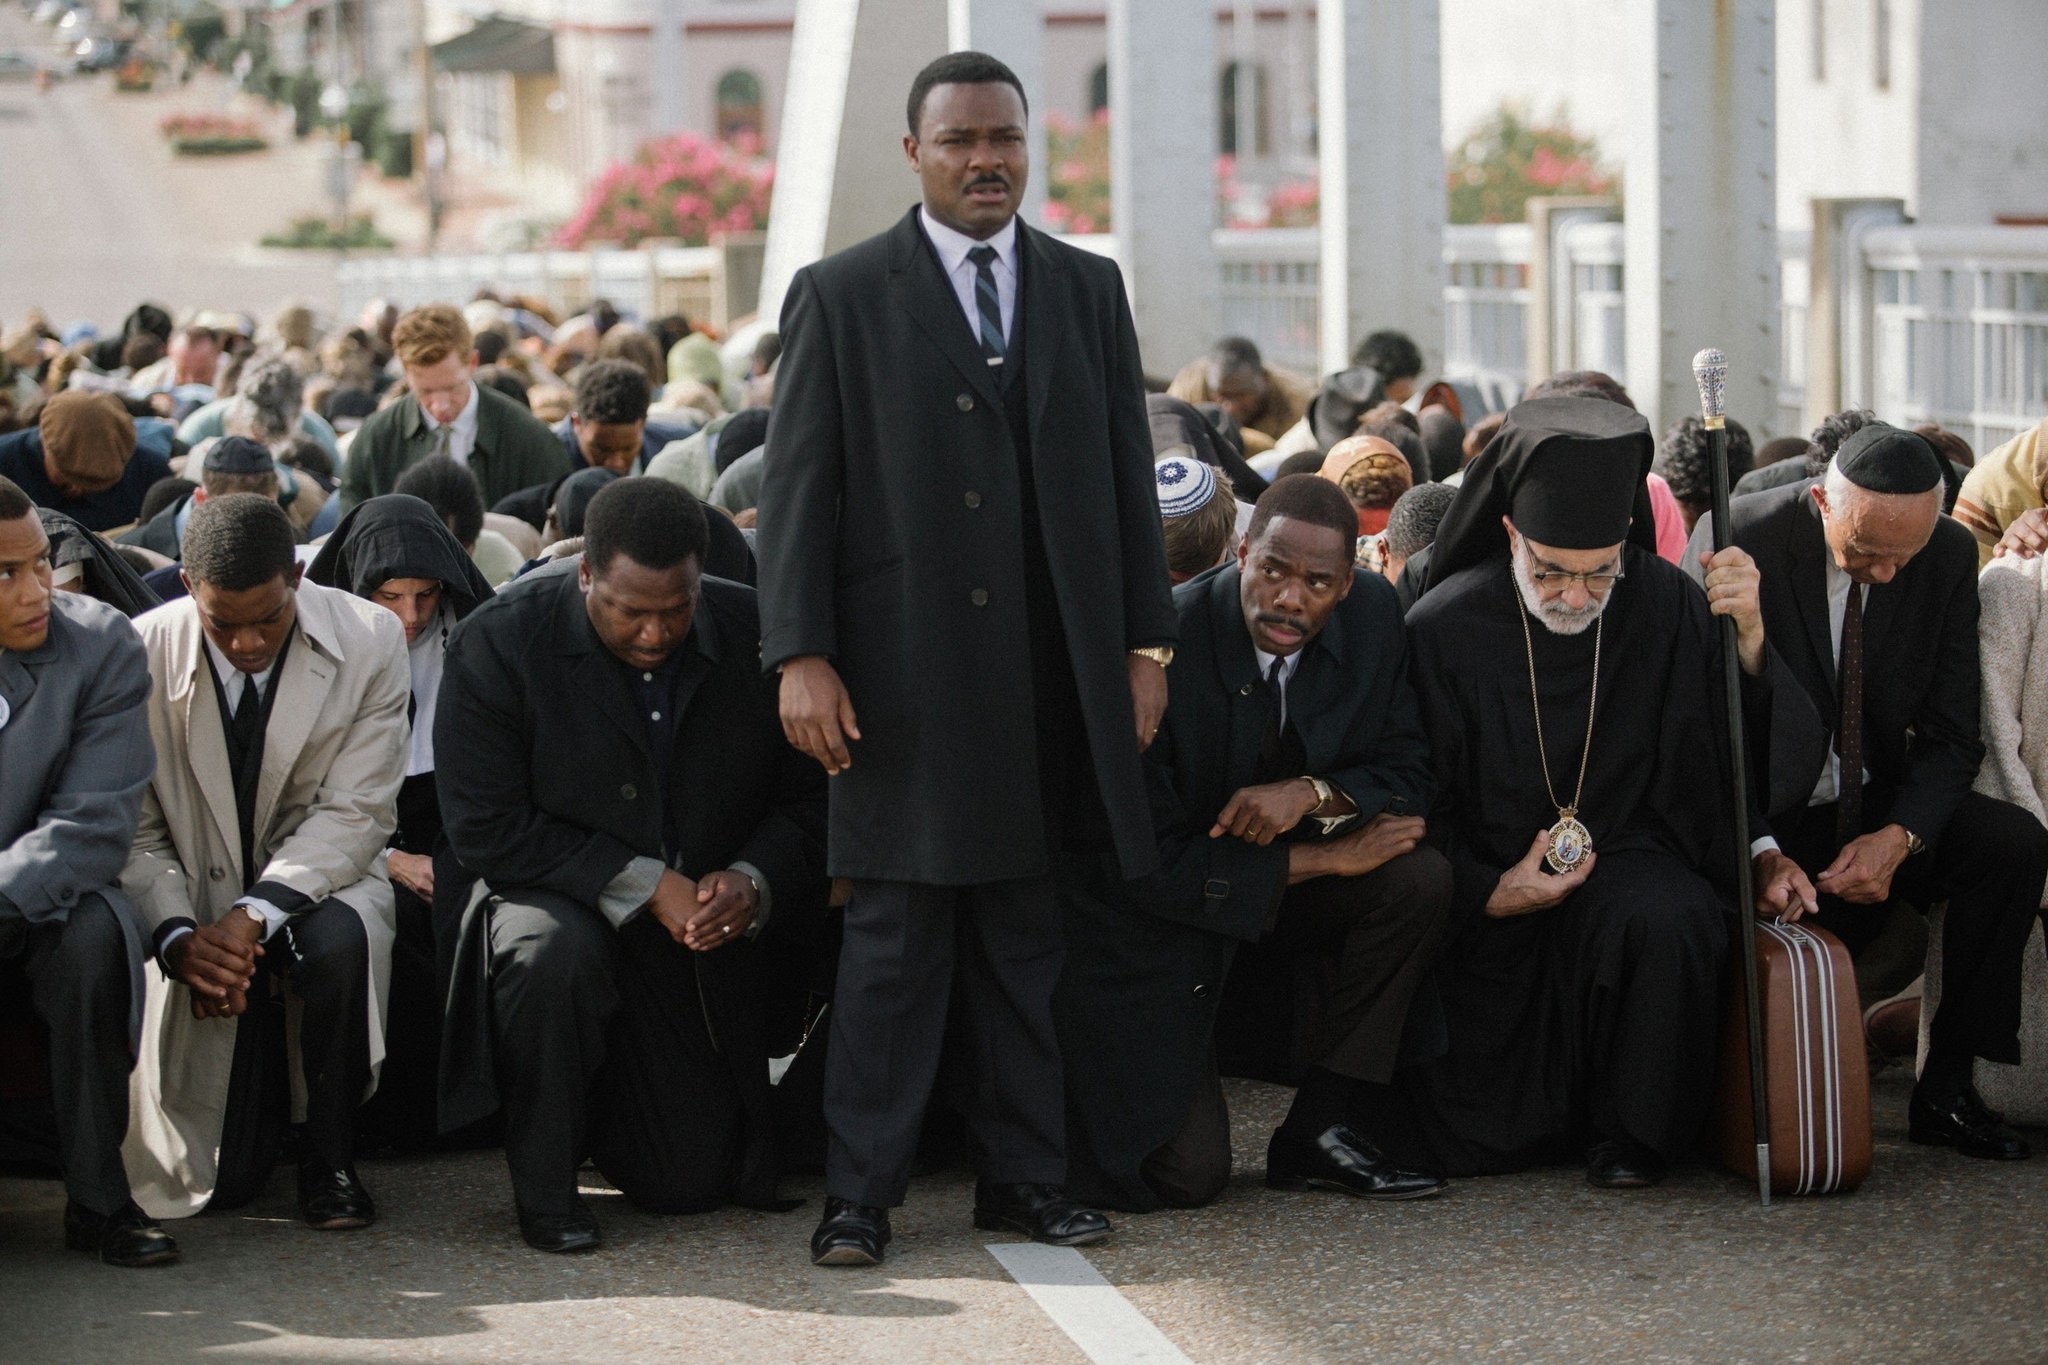 Selma, indicado ao Oscar de Melhor Filme em 2015, foi dirigido por Ava DuVarney, que dá nome ao teste desenvolvido pela crítica Manohla Dargis (Foto: Reprodução)